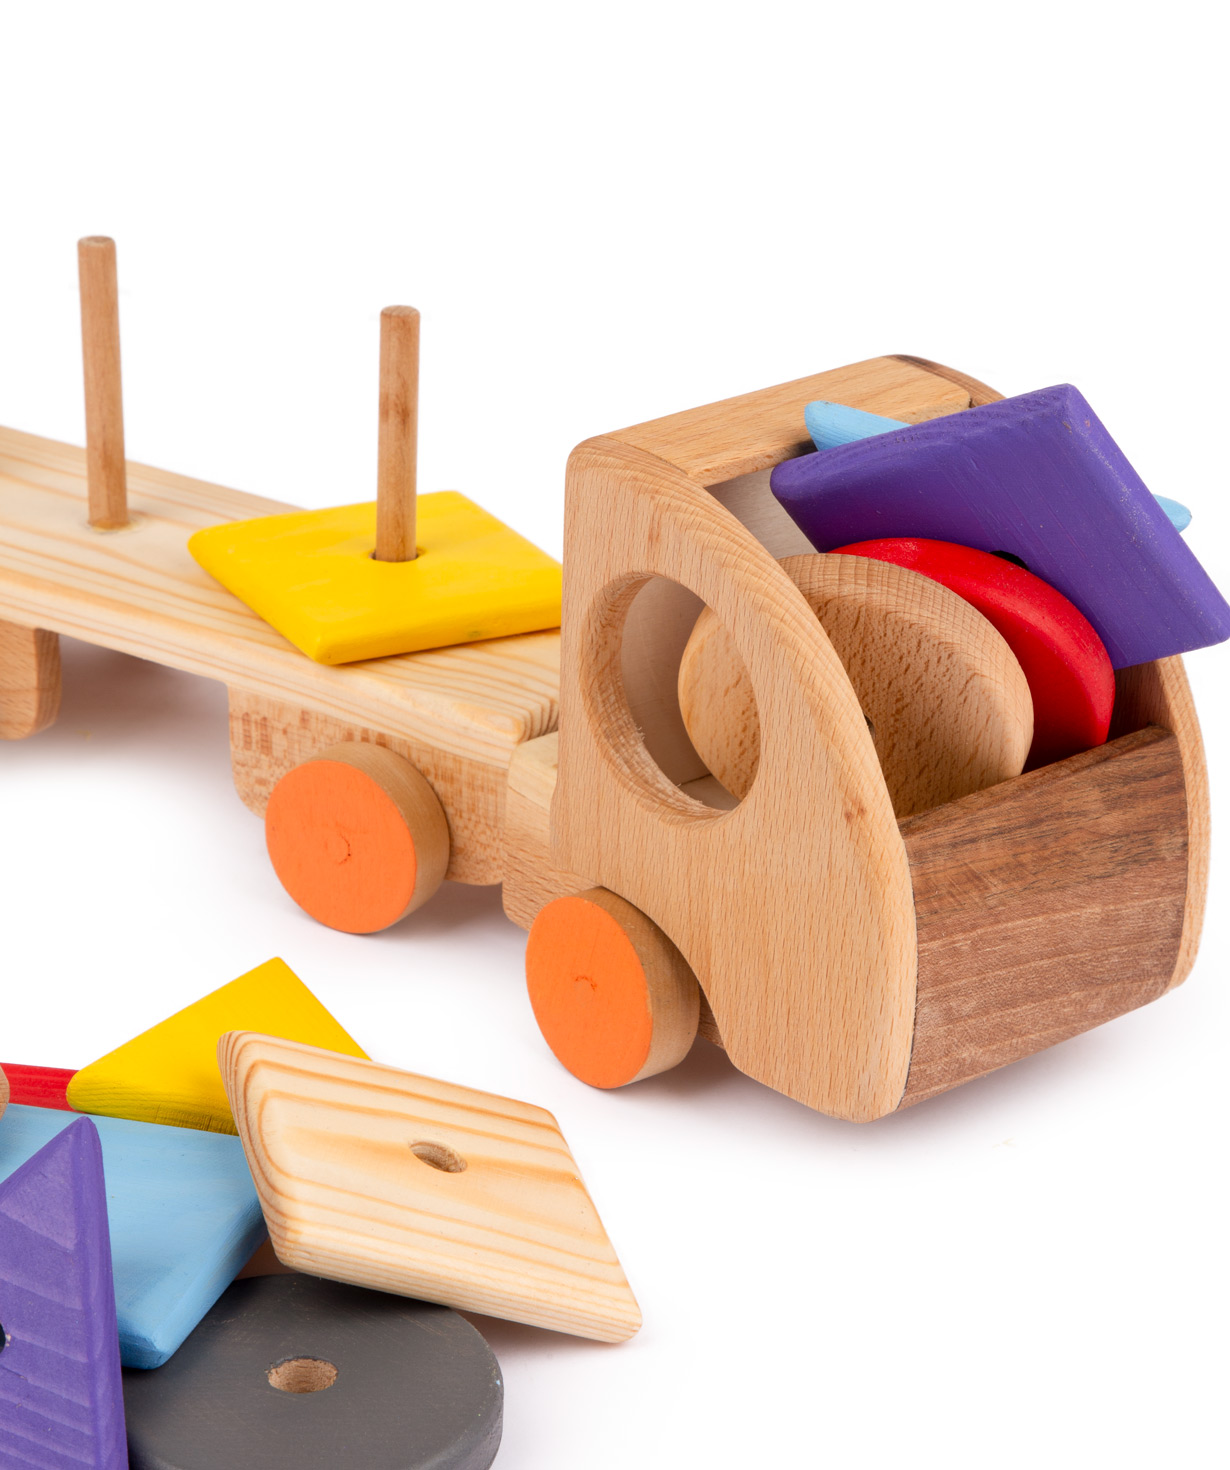 Խաղալիք «Im wooden toys» մեքենա, փայտե №7